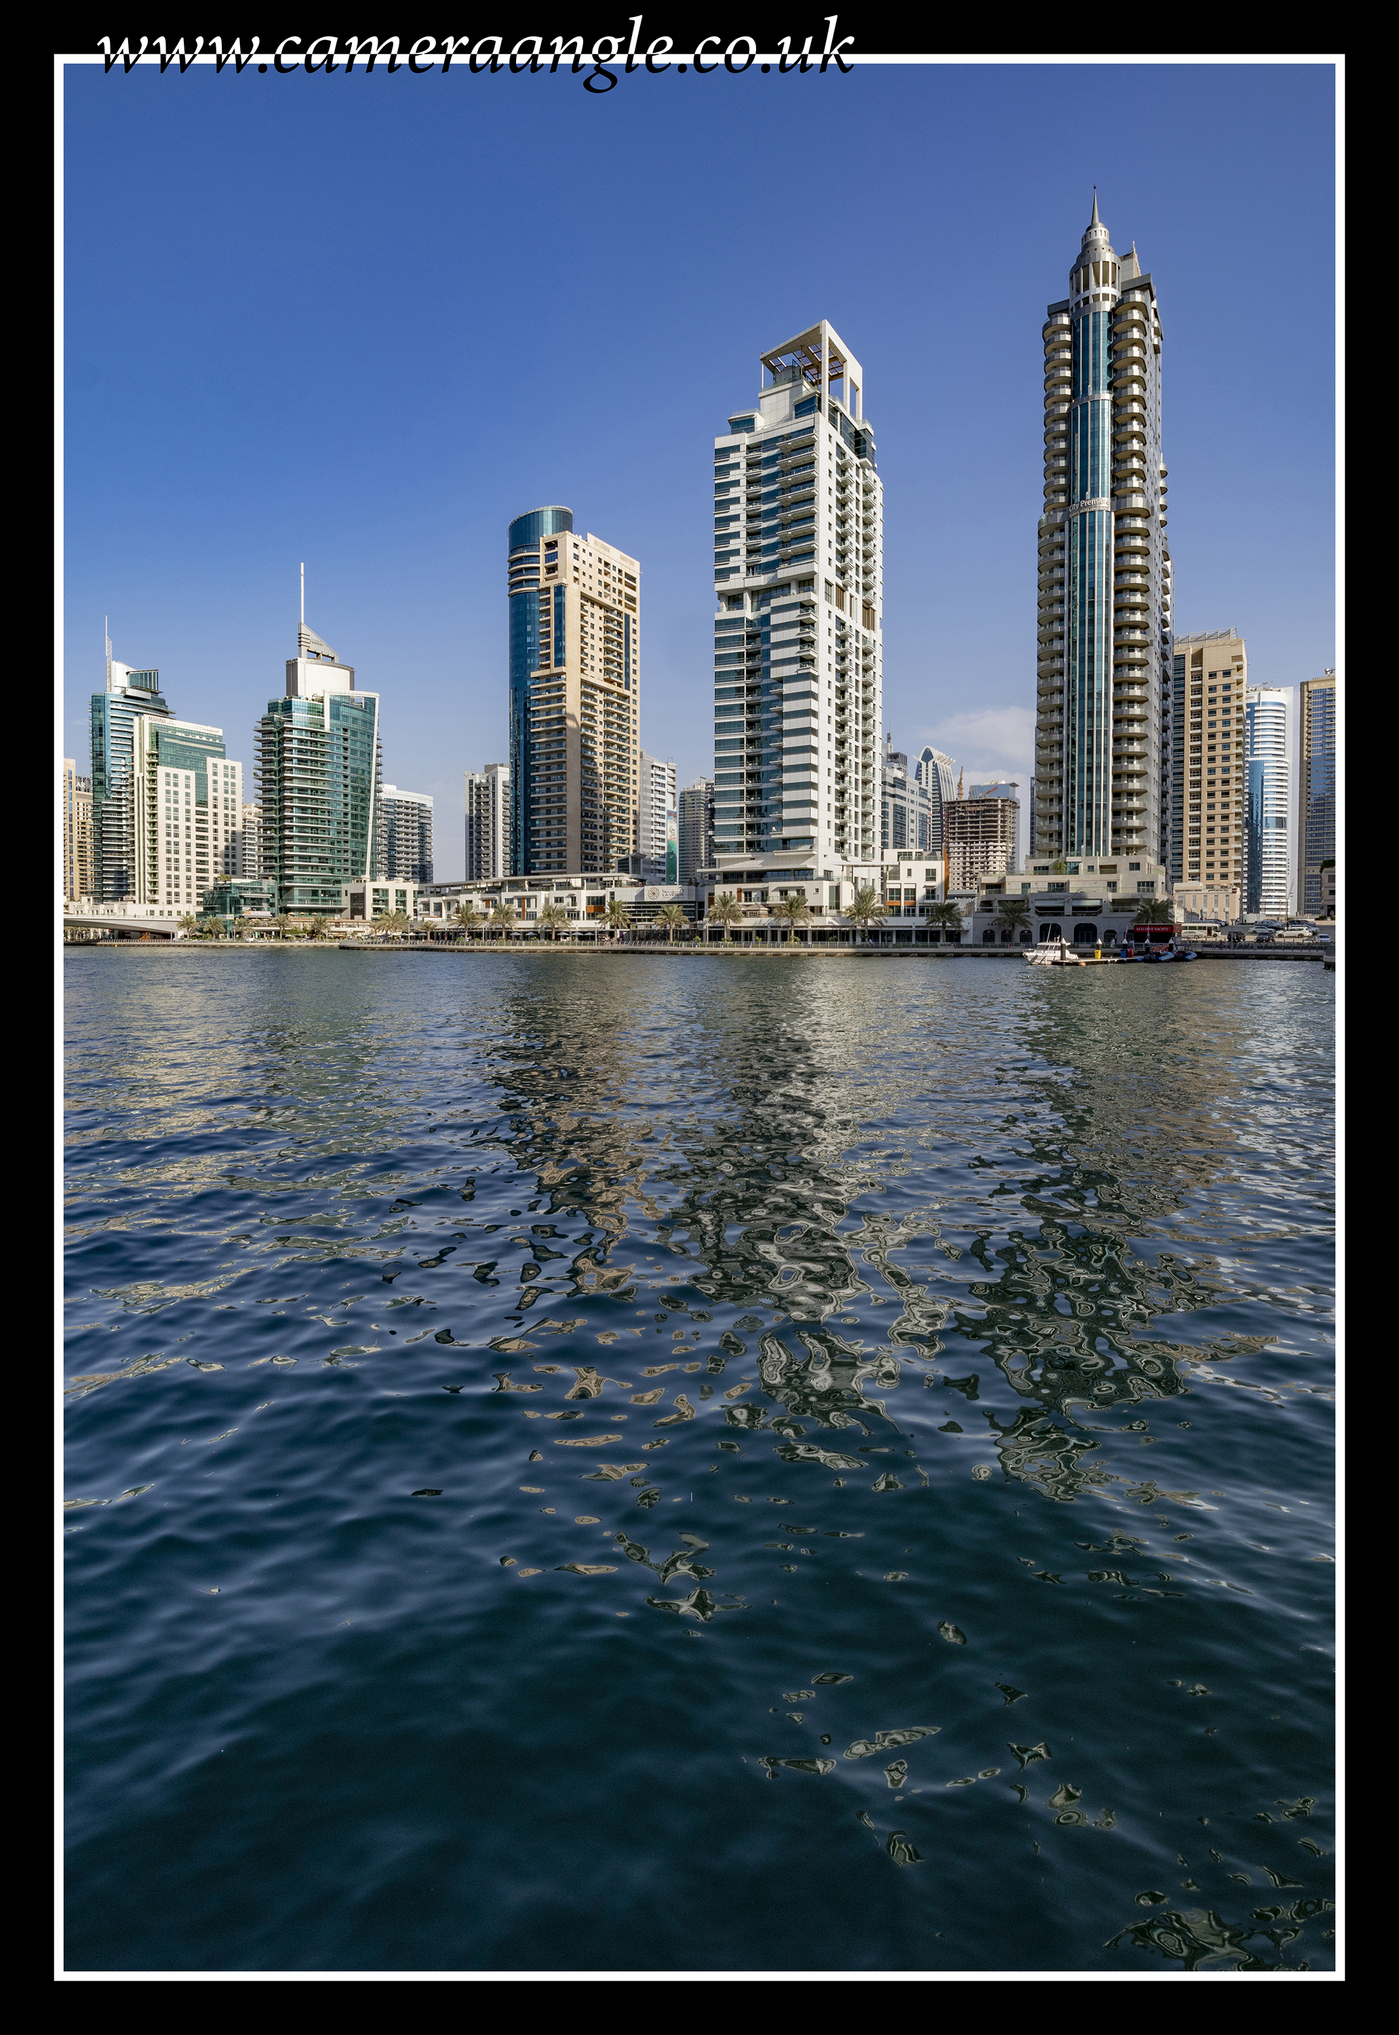 Dubai Marina
Keywords: Dubai Marina